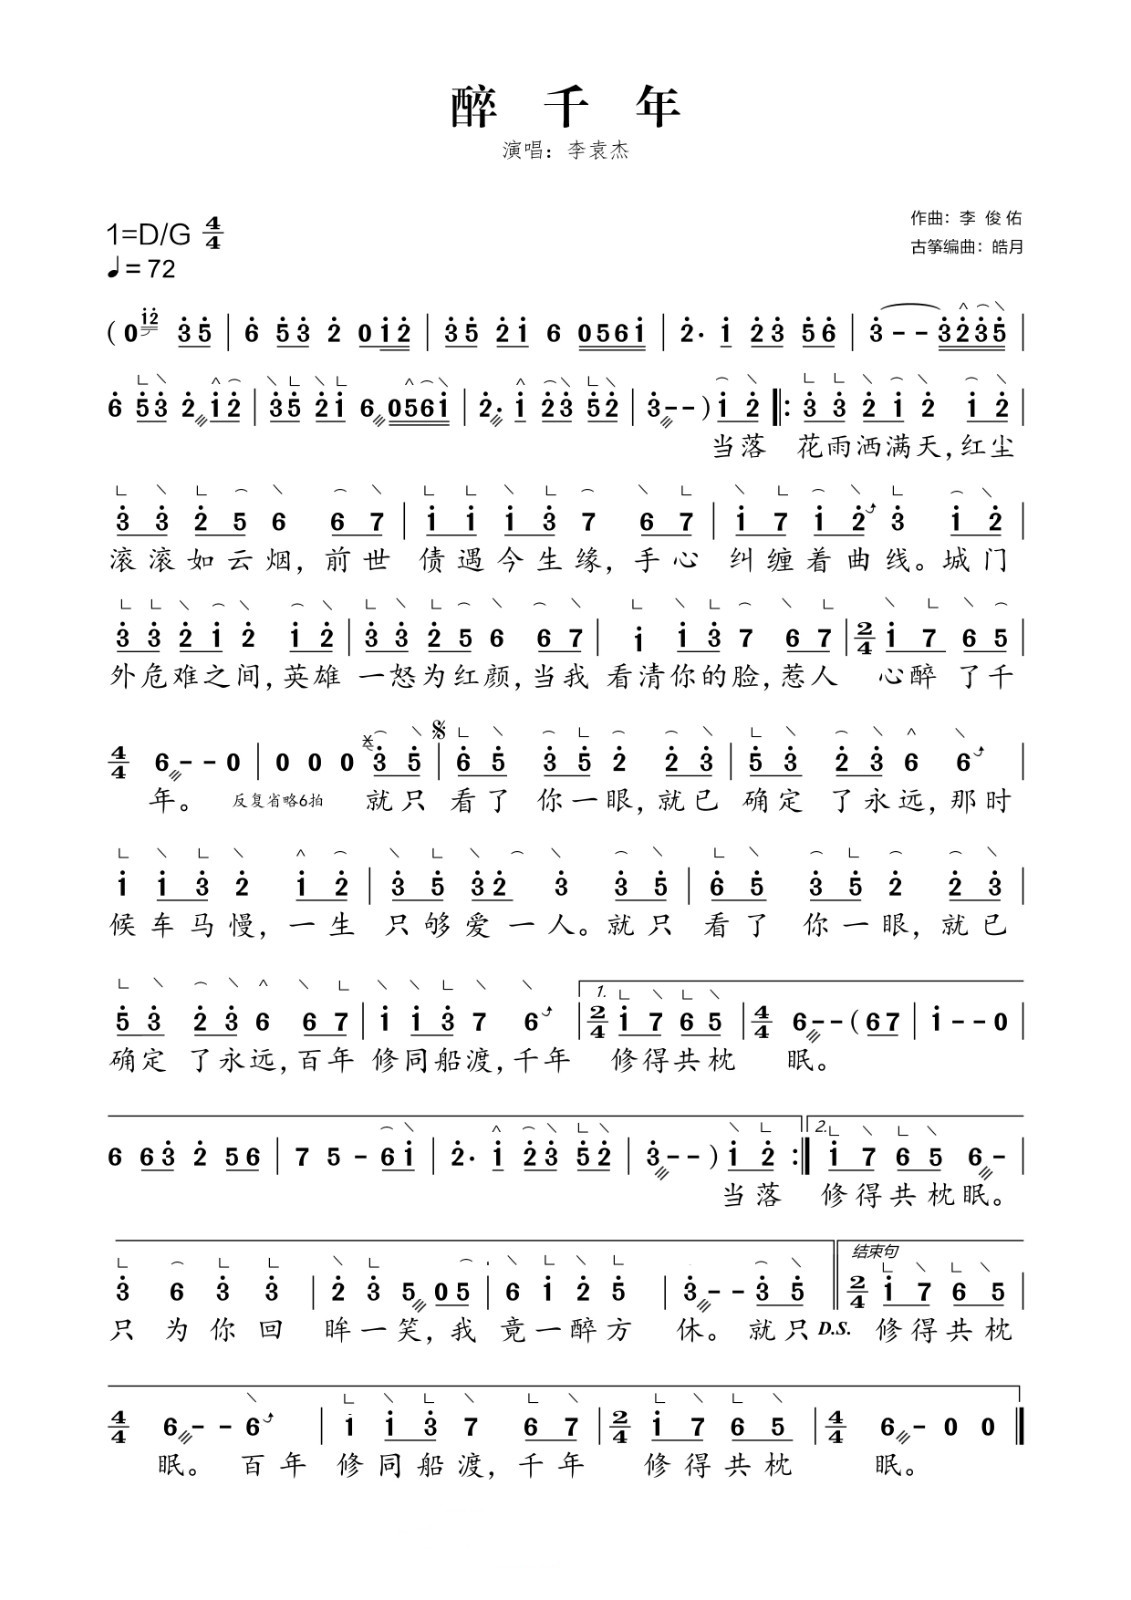 Drunken Thousand years (D)（guzheng sheet music）